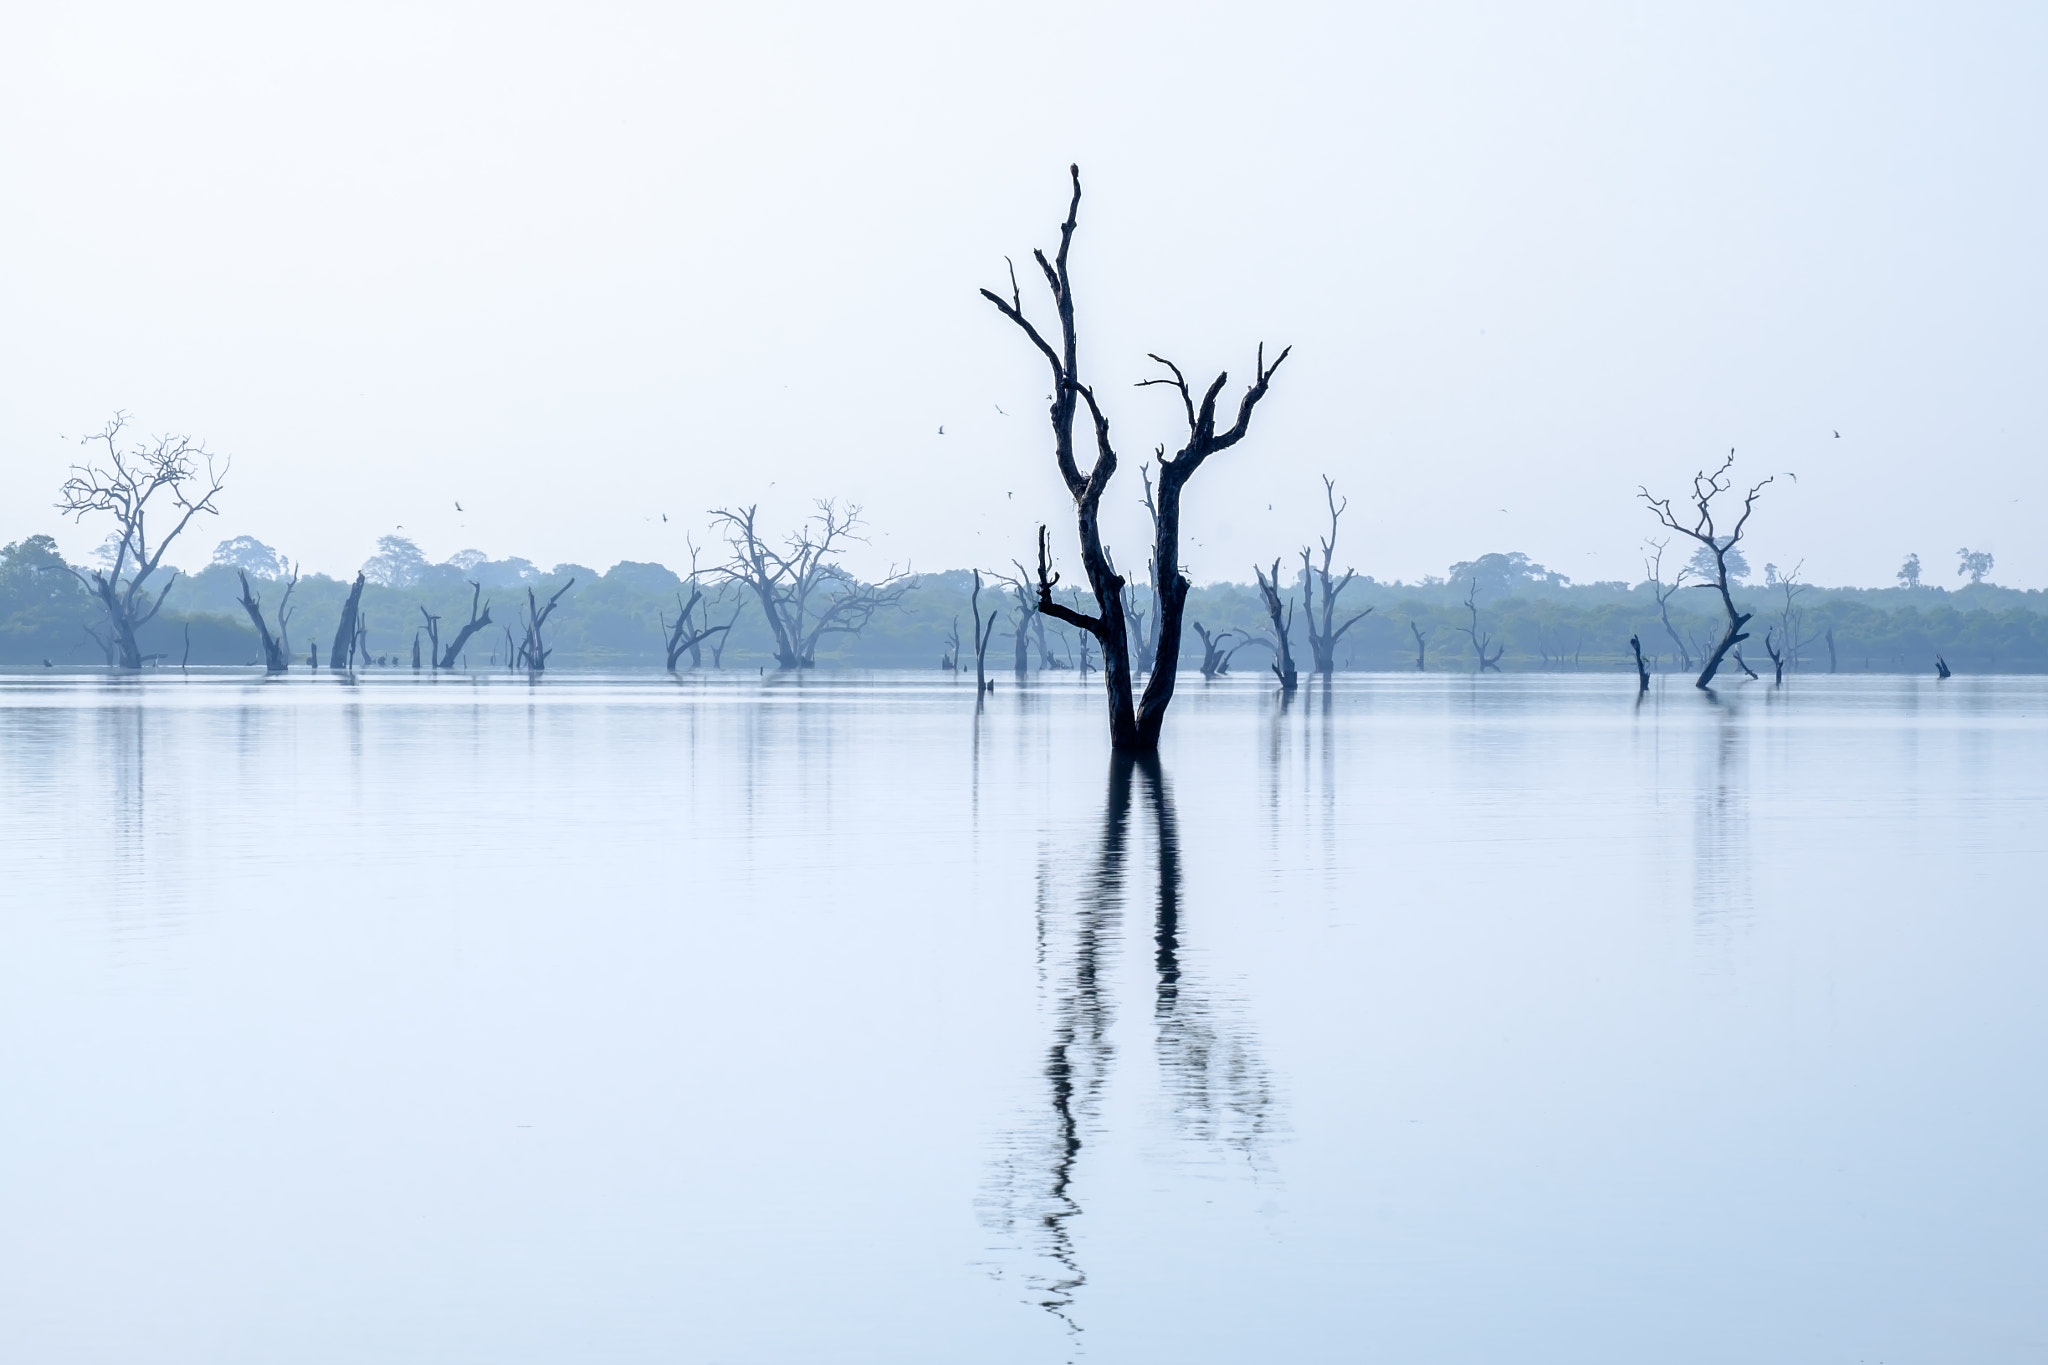 Fujifilm X-E2 sample photo. Submerged trees, udawalawe, sri lanka photography